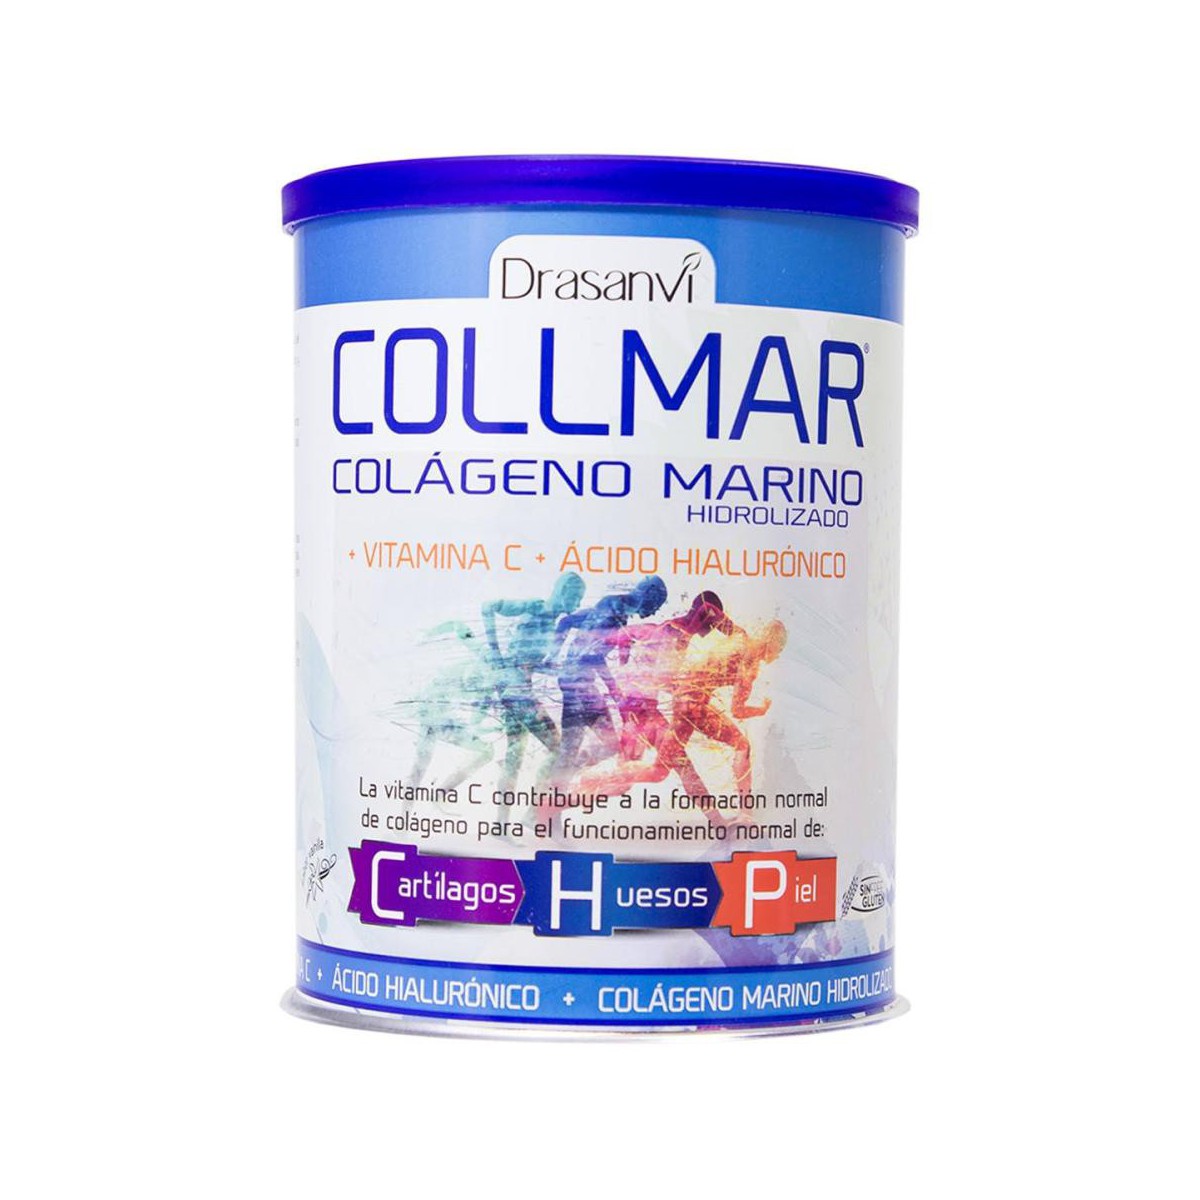 Collmar Colágeno Marino + Vitamina C + Ácido Hialurónico 275 gr